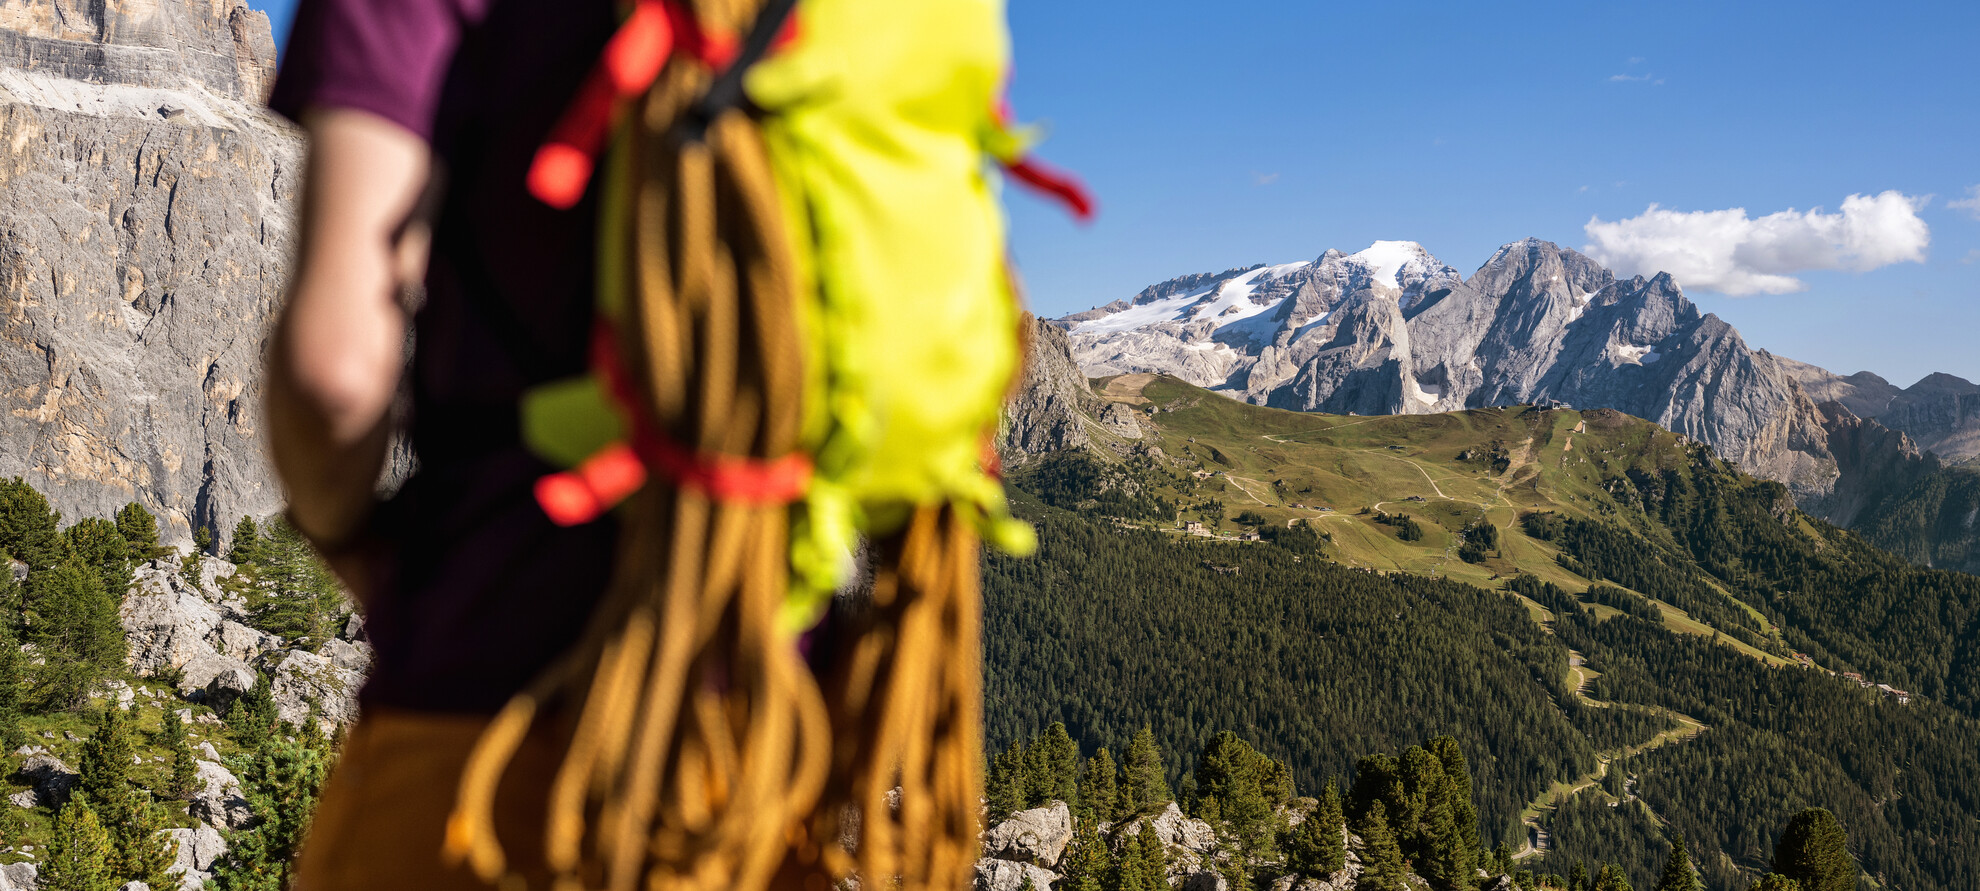 Ferrata con guida alpina - Avvicinamento alla ferrata | © Paolo Cipriani